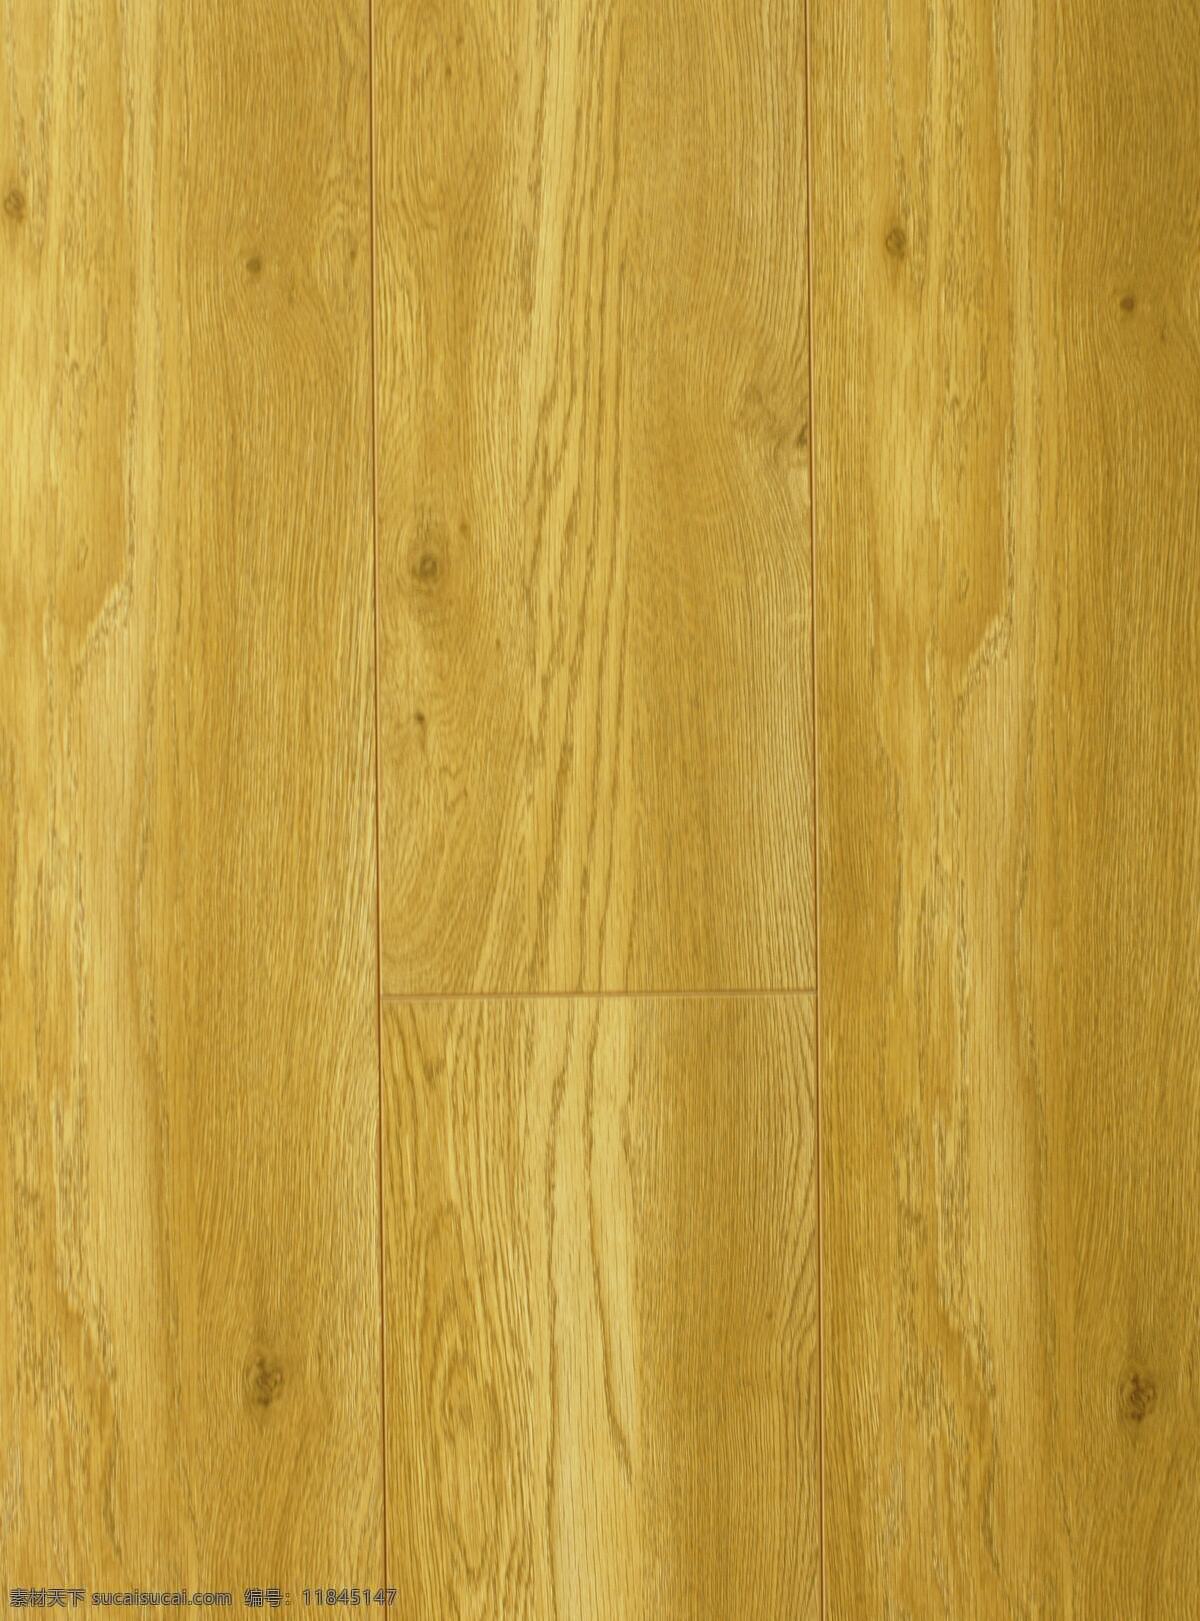 迈阿密 白 橡木 地板 实木地板 地板贴图 地板材质 家装素材 装修素材 装修装饰 木纹贴图 木纹装饰 木纹图案 生活百科 生活素材